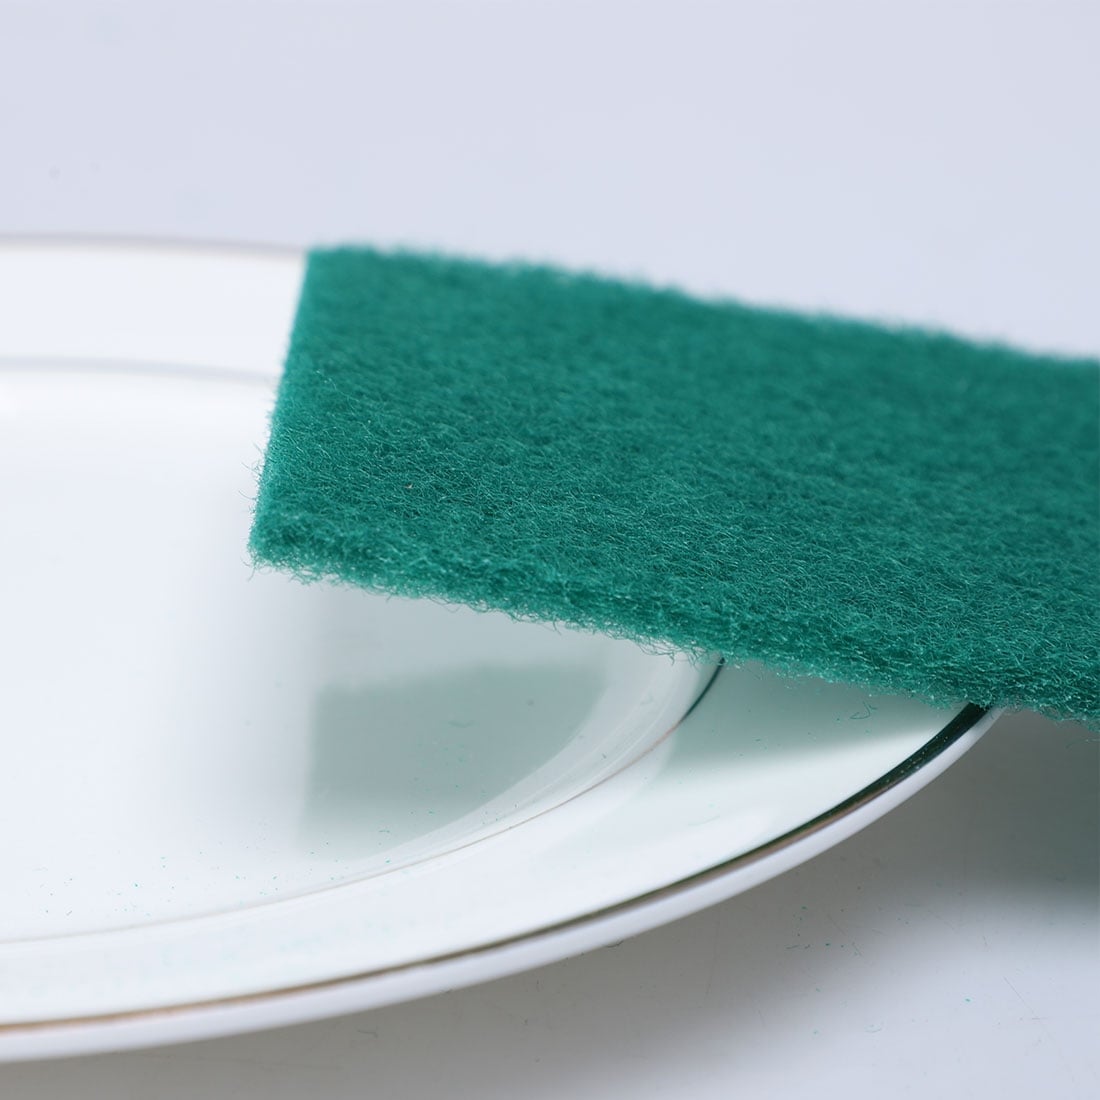 Unique Bargains Sponge Kitchen Bowl Dish Wash Clean Scrub Cleaning Pads  20pcs Green